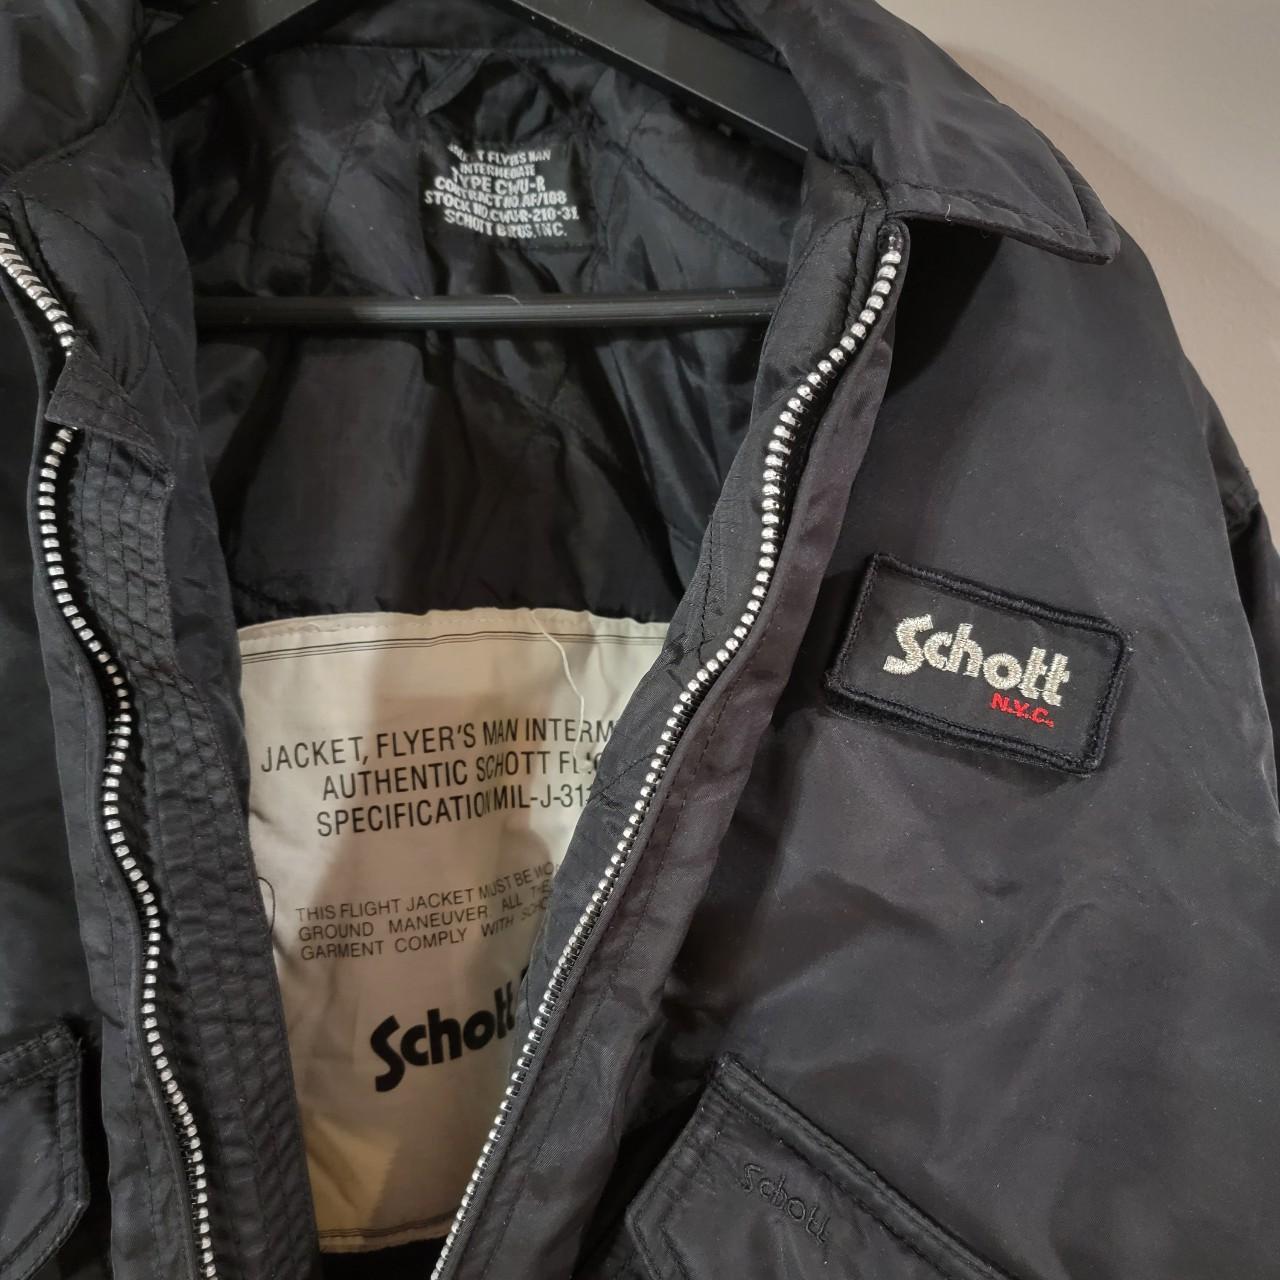 Schott Men's Black Jacket (2)